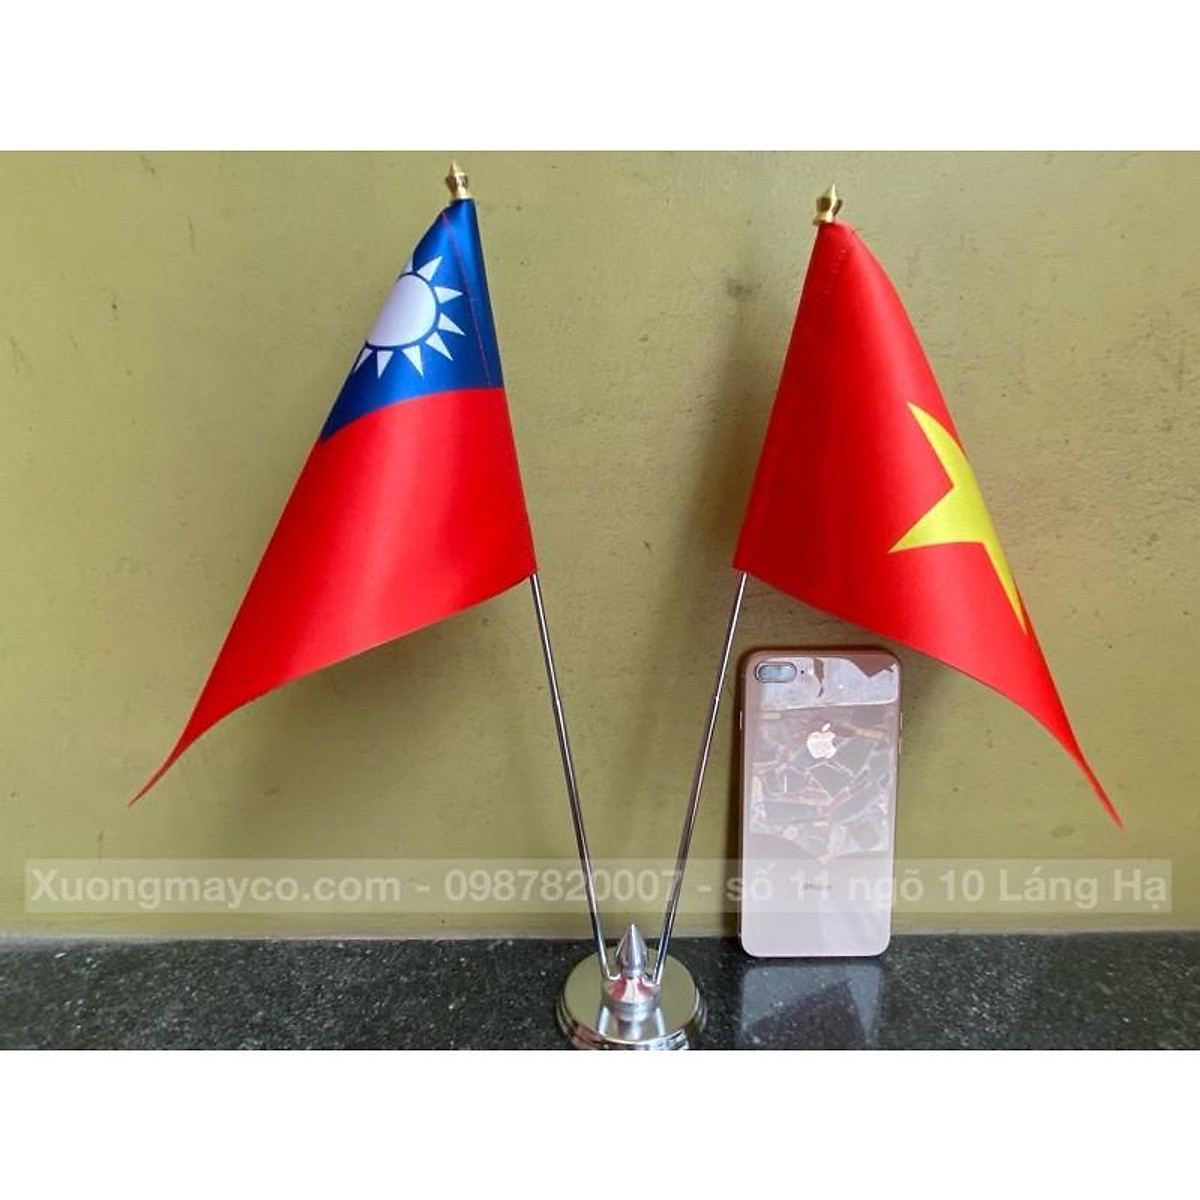 Công ty cờ Tài Nguyên Việt đã chính thức sản xuất cờ để bàn Việt Nam tại Đài Loan, giúp những người yêu quê hương có thể mang theo bên mình một tinh thần đồng điệu. Với kích thước nhỏ gọn, giá cả phải chăng, chắc chắn bạn sẽ không muốn bỏ lỡ sản phẩm này. Hãy sở hữu ngay cho mình một chiếc cờ để bàn Việt Nam và hãy phô diễn niềm tự hào của mình.